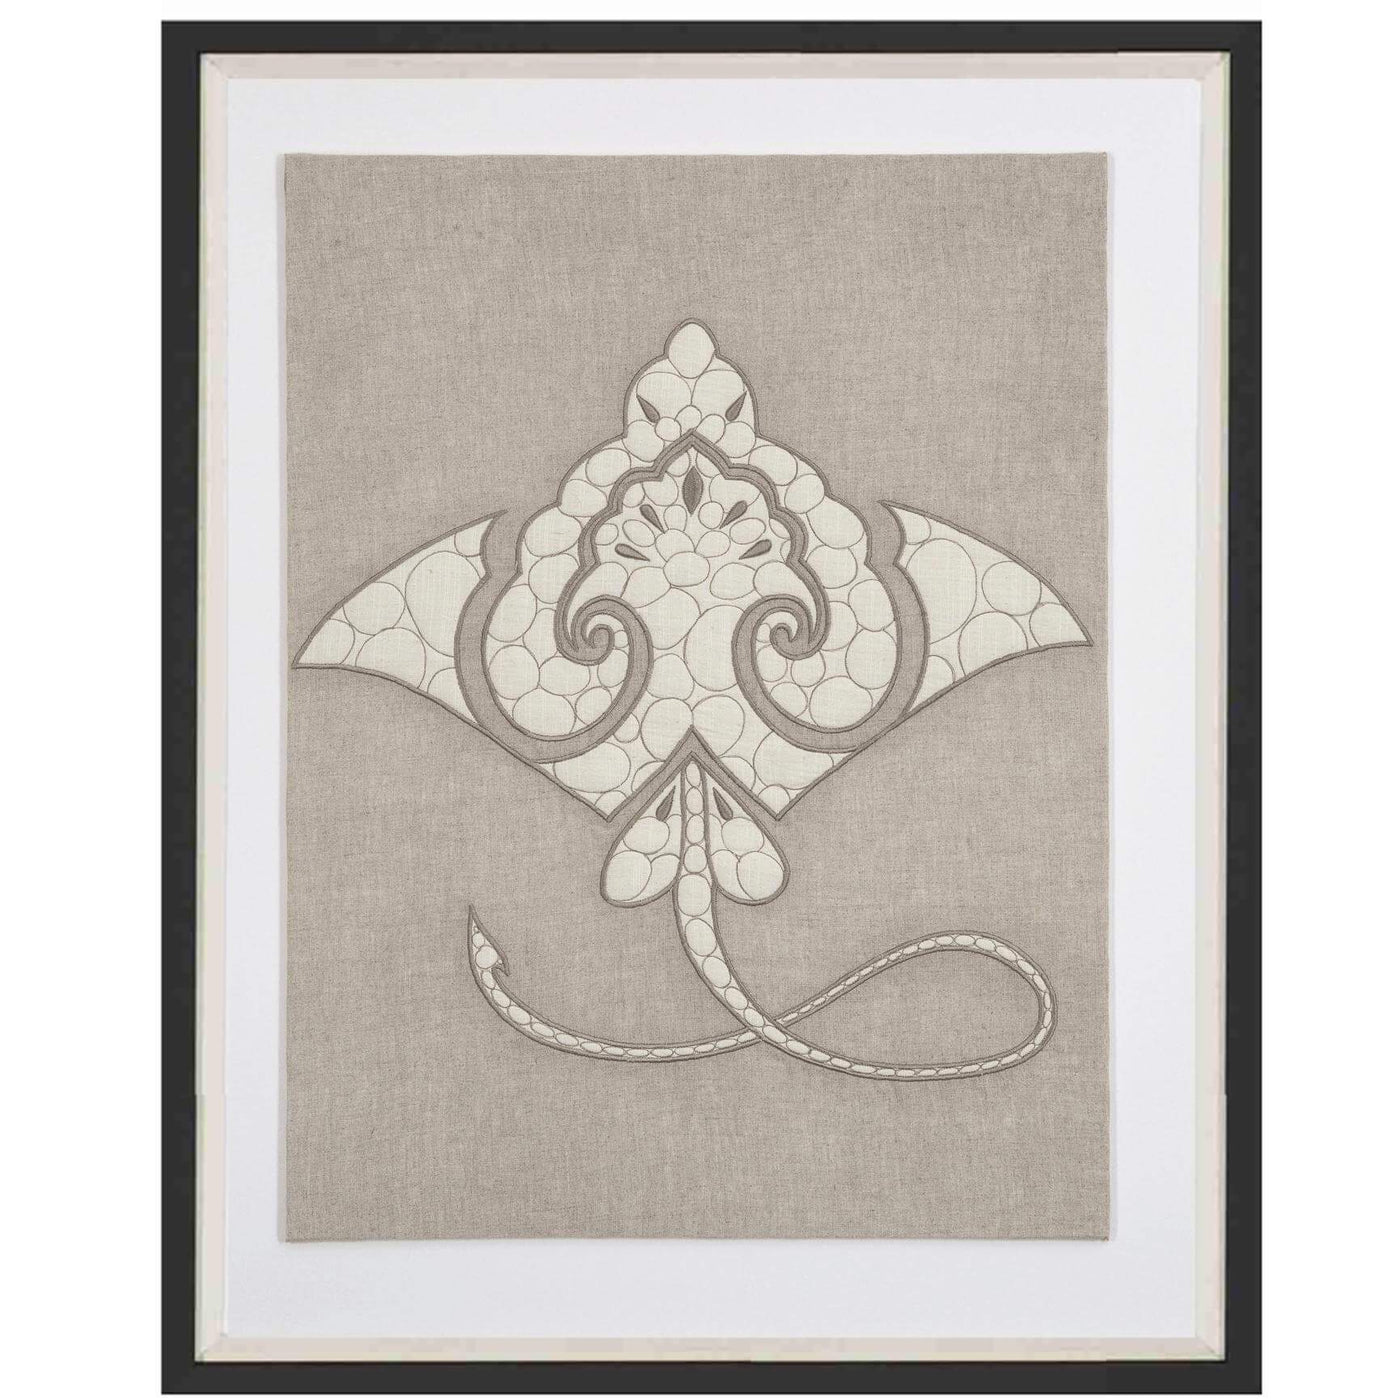 Sea Manta Ray Natural Artwork 67 x 85 cm